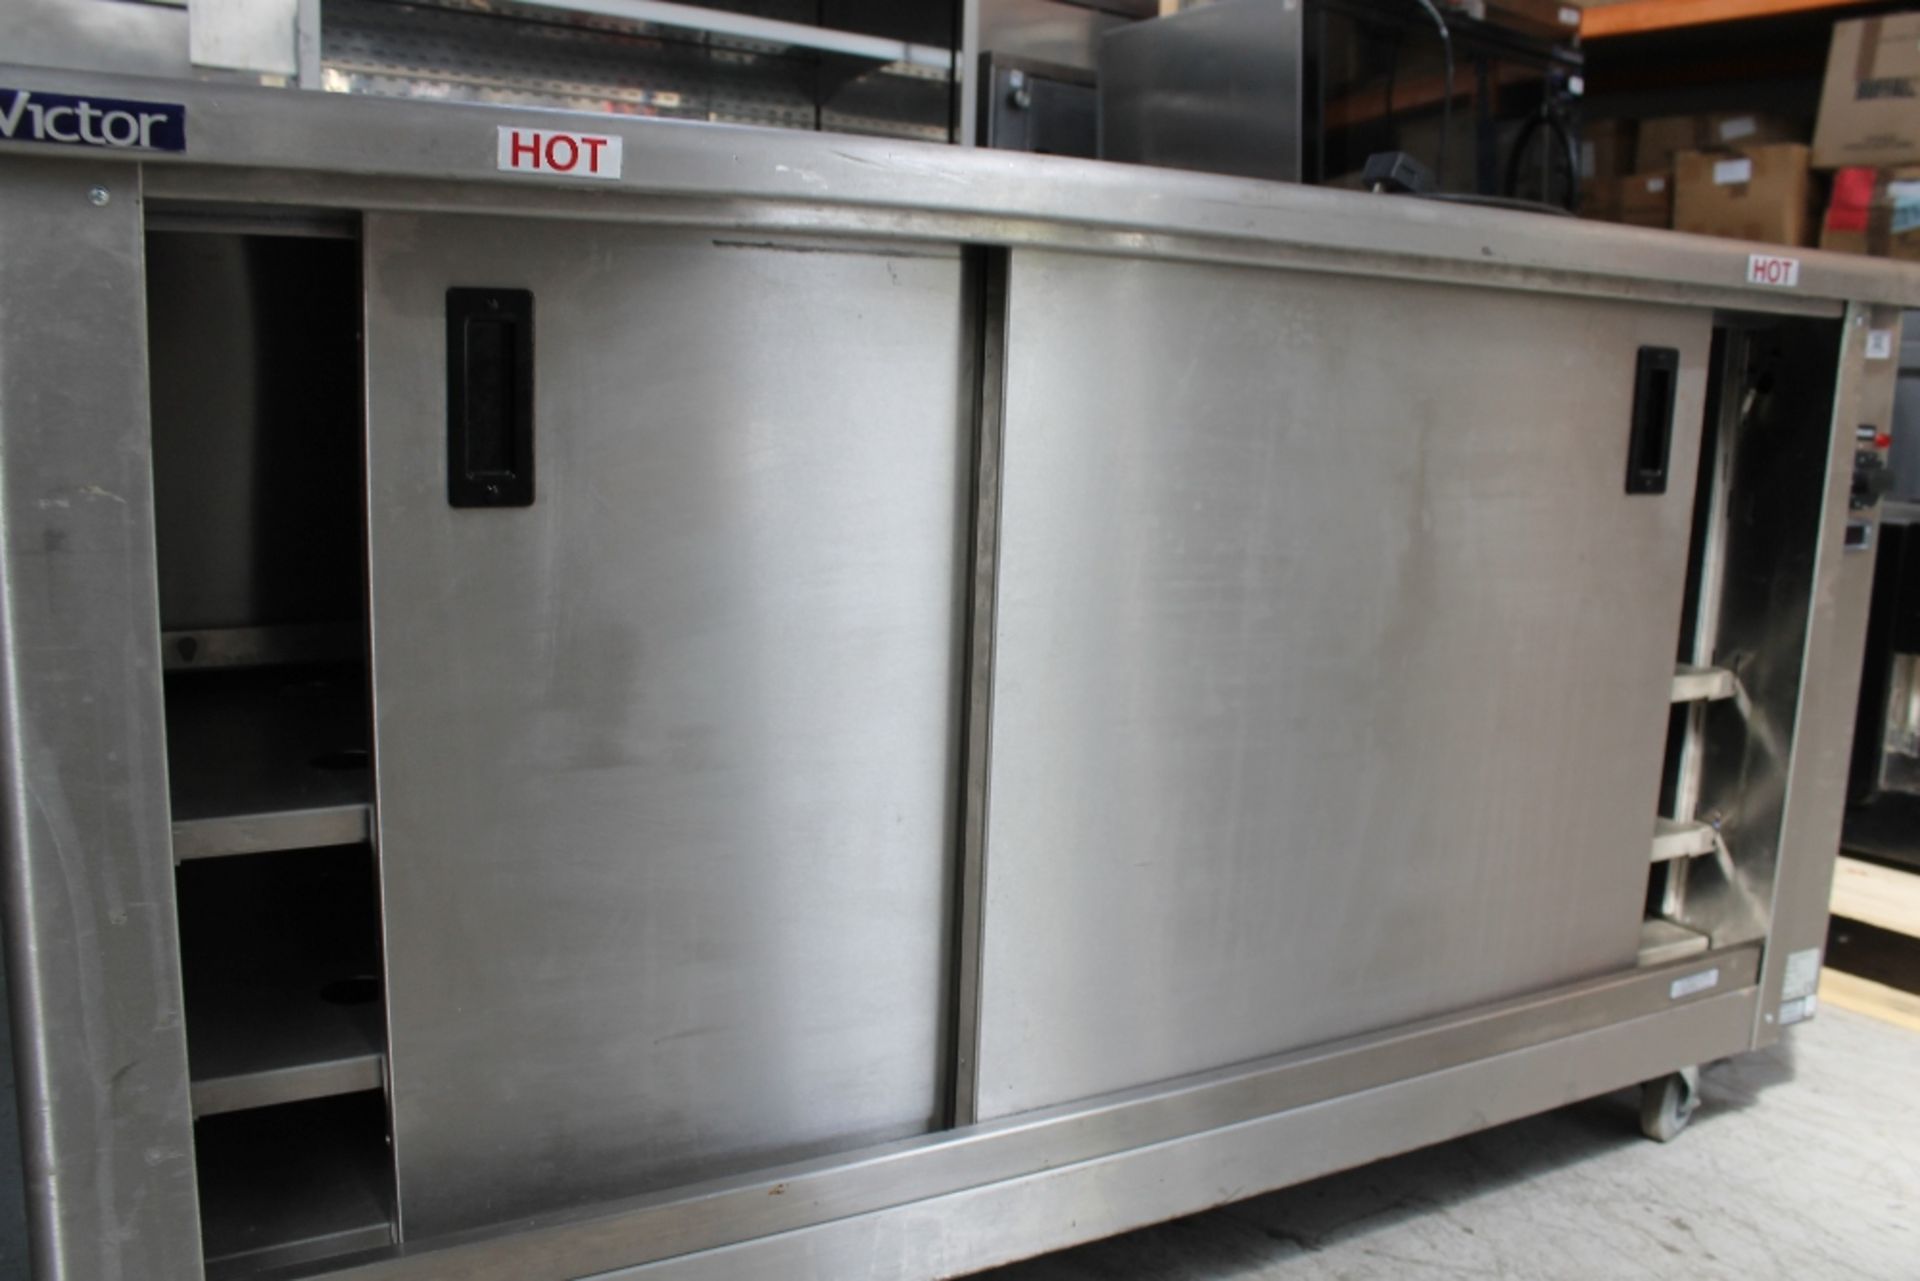 Victor Mobile Hot Cupboard – Tested - 1-ph – NO VAT Model PEER16Z-42 – serial no: 20358 – 220-240v - Image 2 of 3